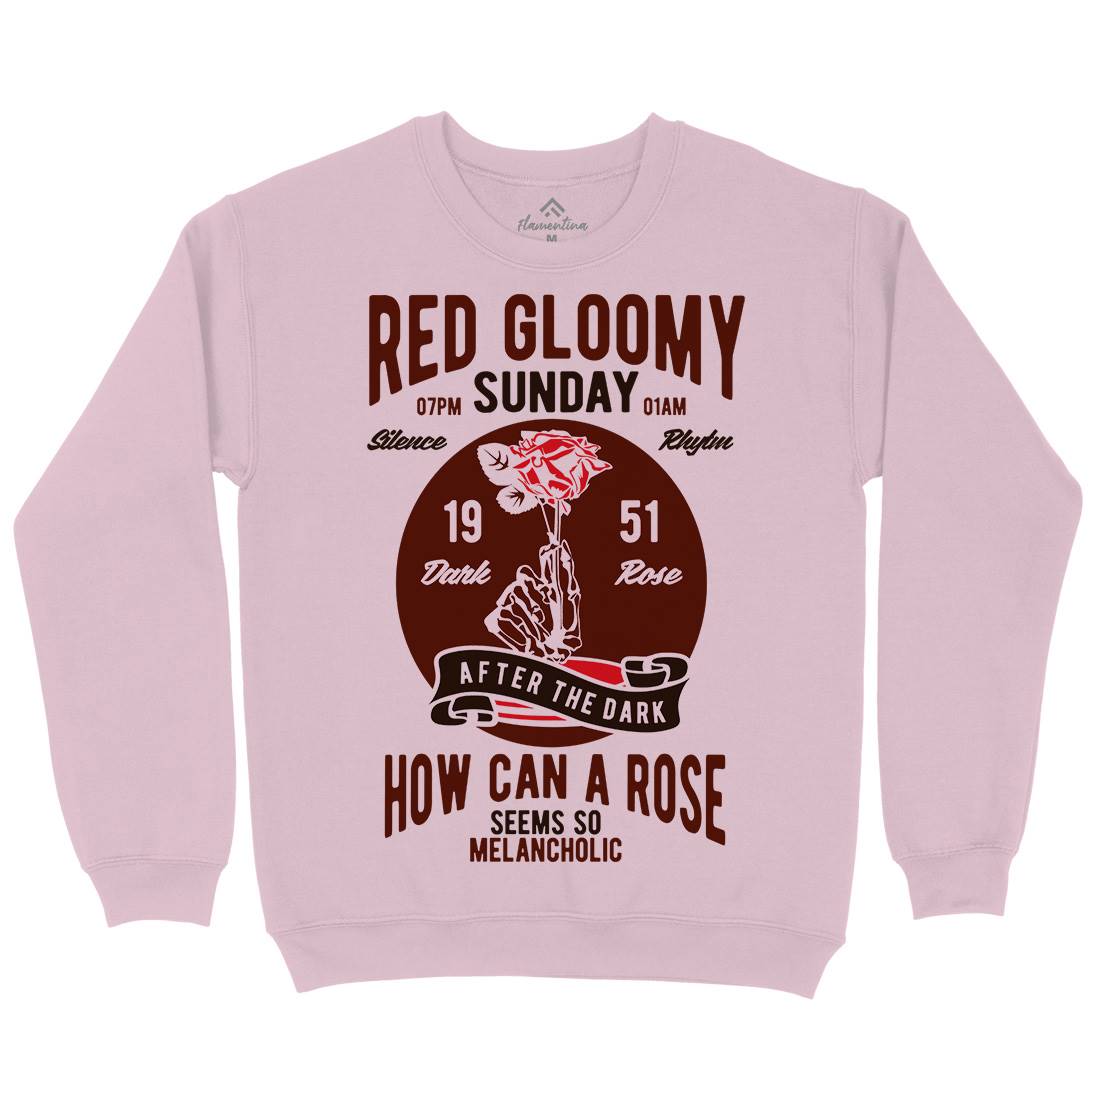 Red Gloomy Sunday Kids Crew Neck Sweatshirt Retro B437